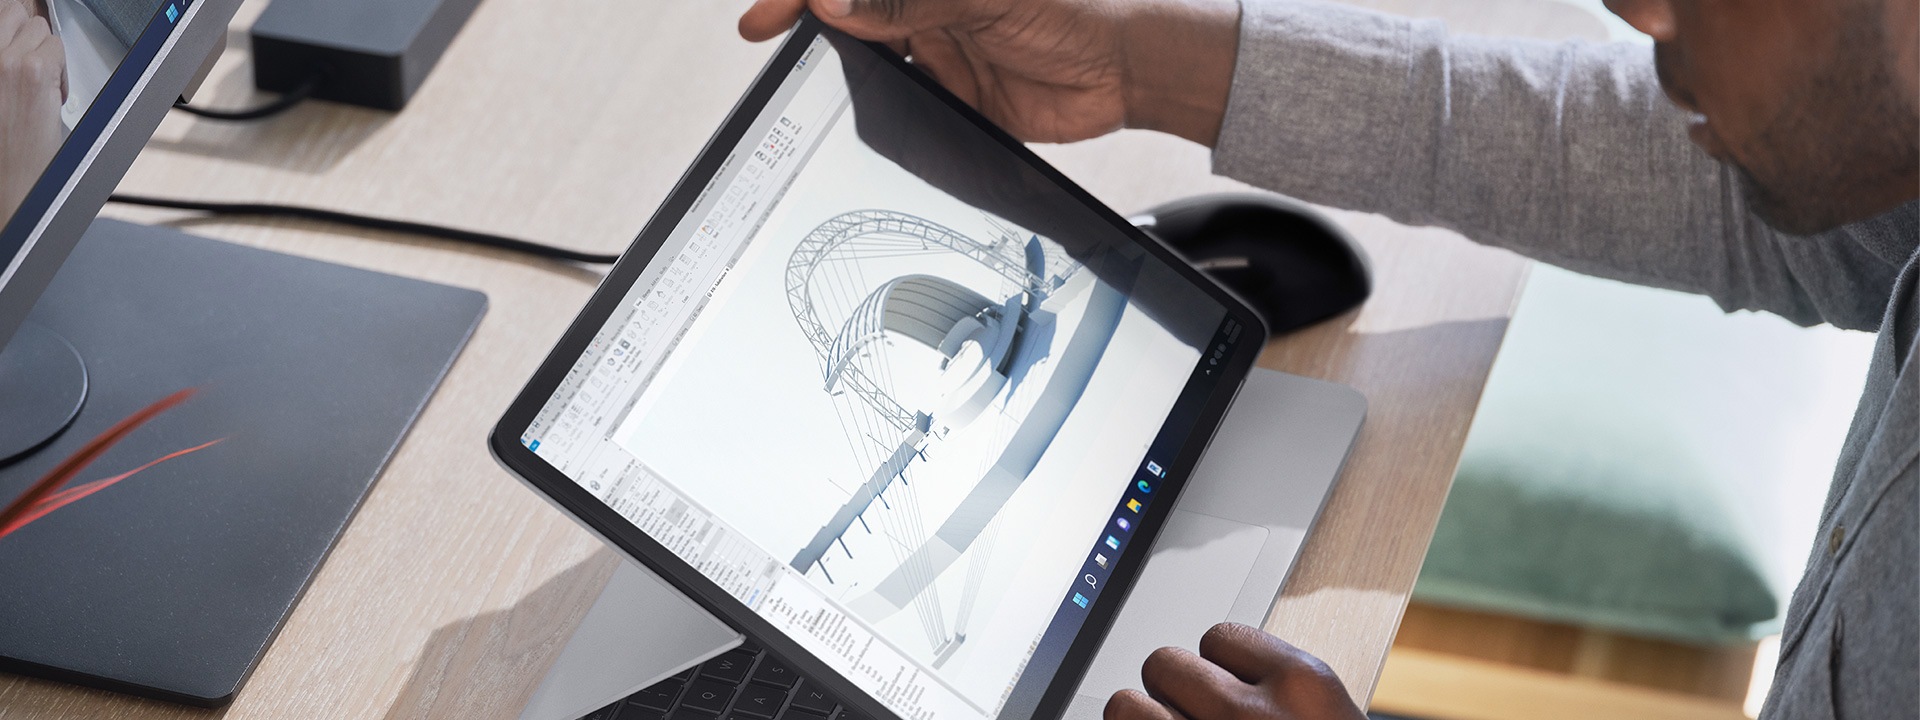 Surface Laptop Studio esittelytilassa kotitoimiston pöydällä